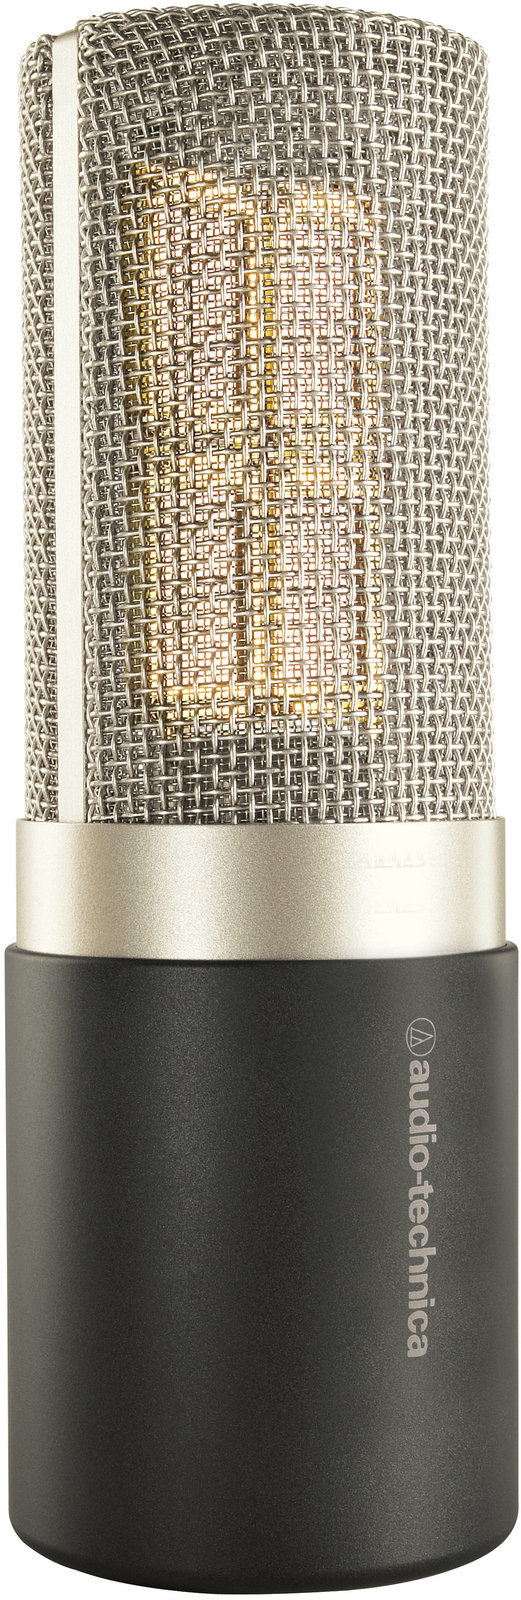 Condensatormicrofoon voor studio Audio-Technica AT5040 Condensatormicrofoon voor studio